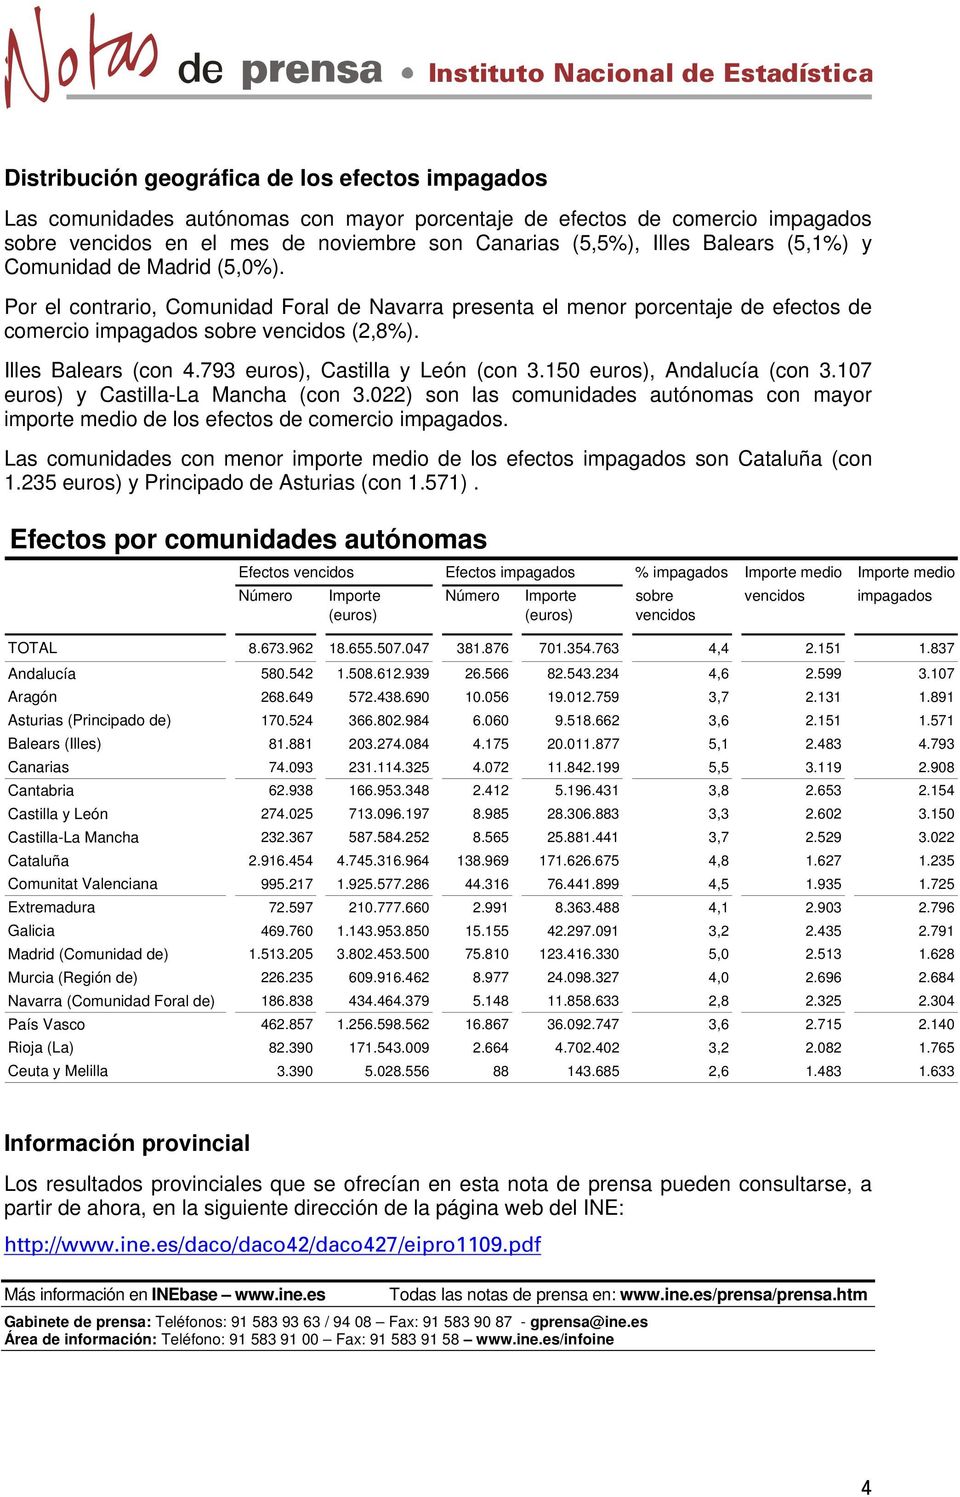 793 euros), Castilla y León (con 3.150 euros), Andalucía (con 3.107 euros) y Castilla-La Mancha (con 3.022) son las comunidades autónomas con mayor importe medio de los efectos de comercio impagados.